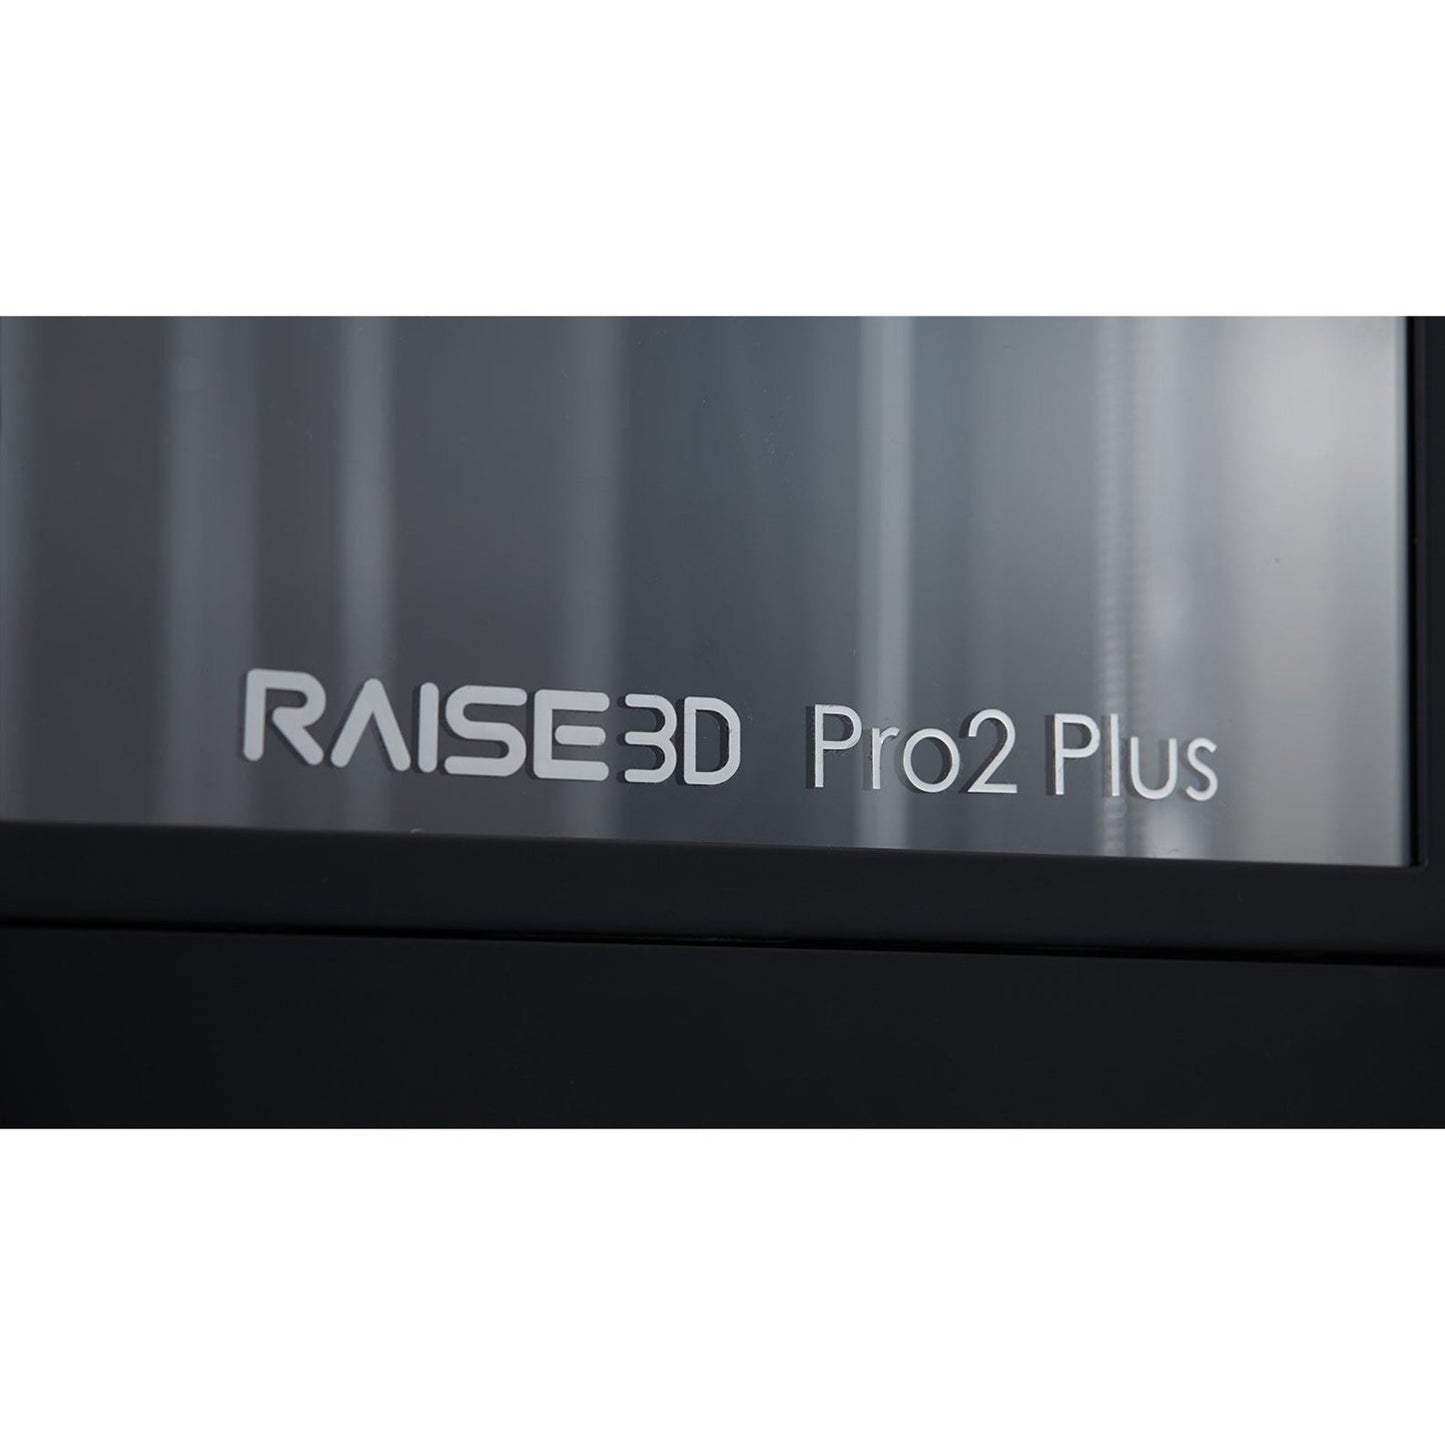 RAISE3D Pro2 3D Printer